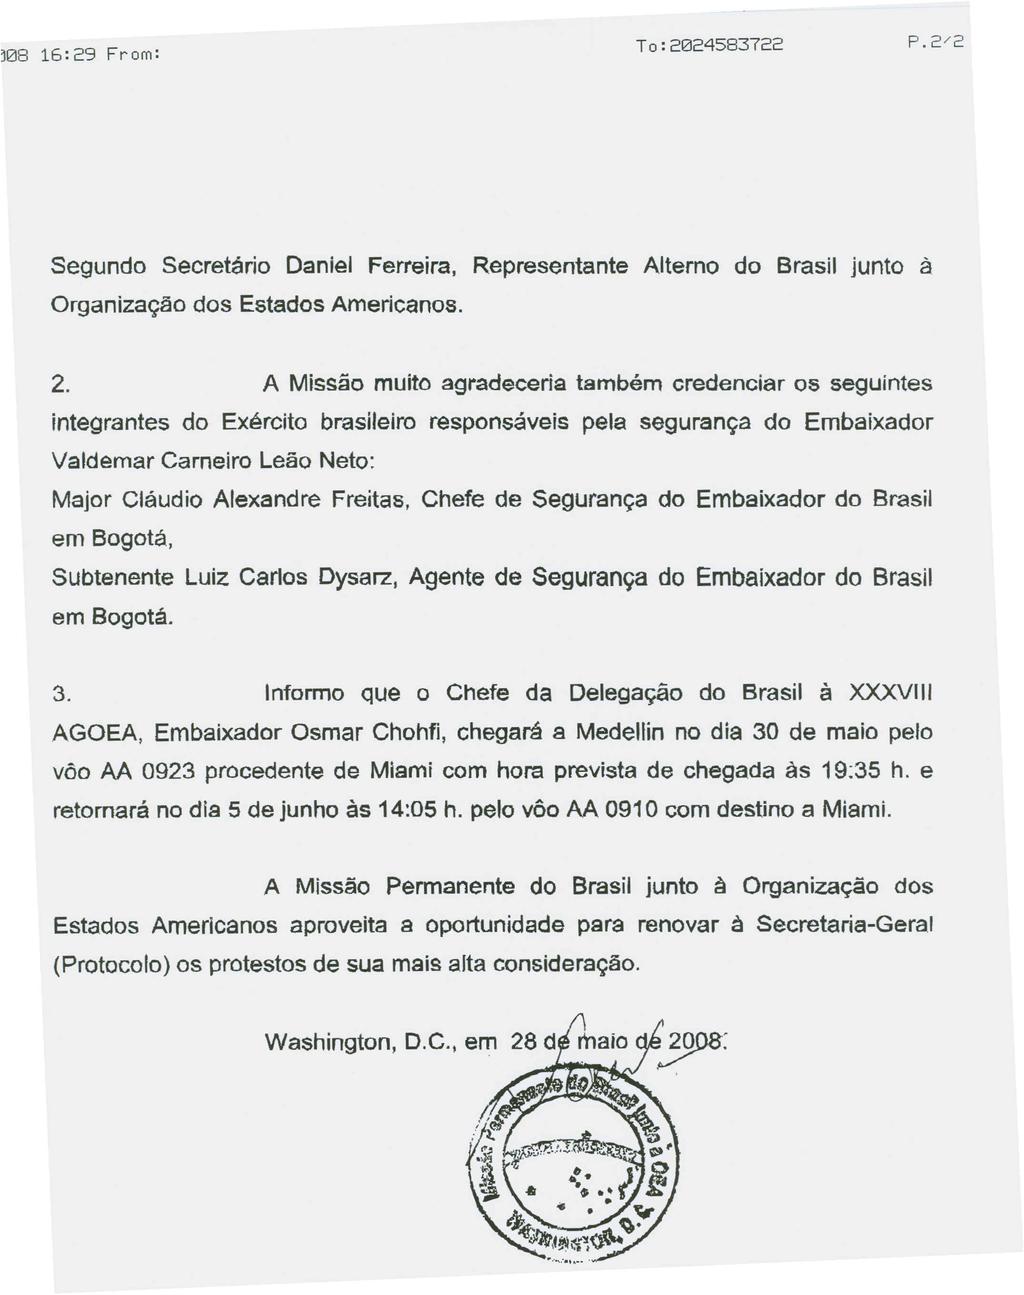 Segundo Secretario Daniel Ferreira, Representante Alterno do Brasil junto a Organiza<.fao dos Estados Americanos. 2.